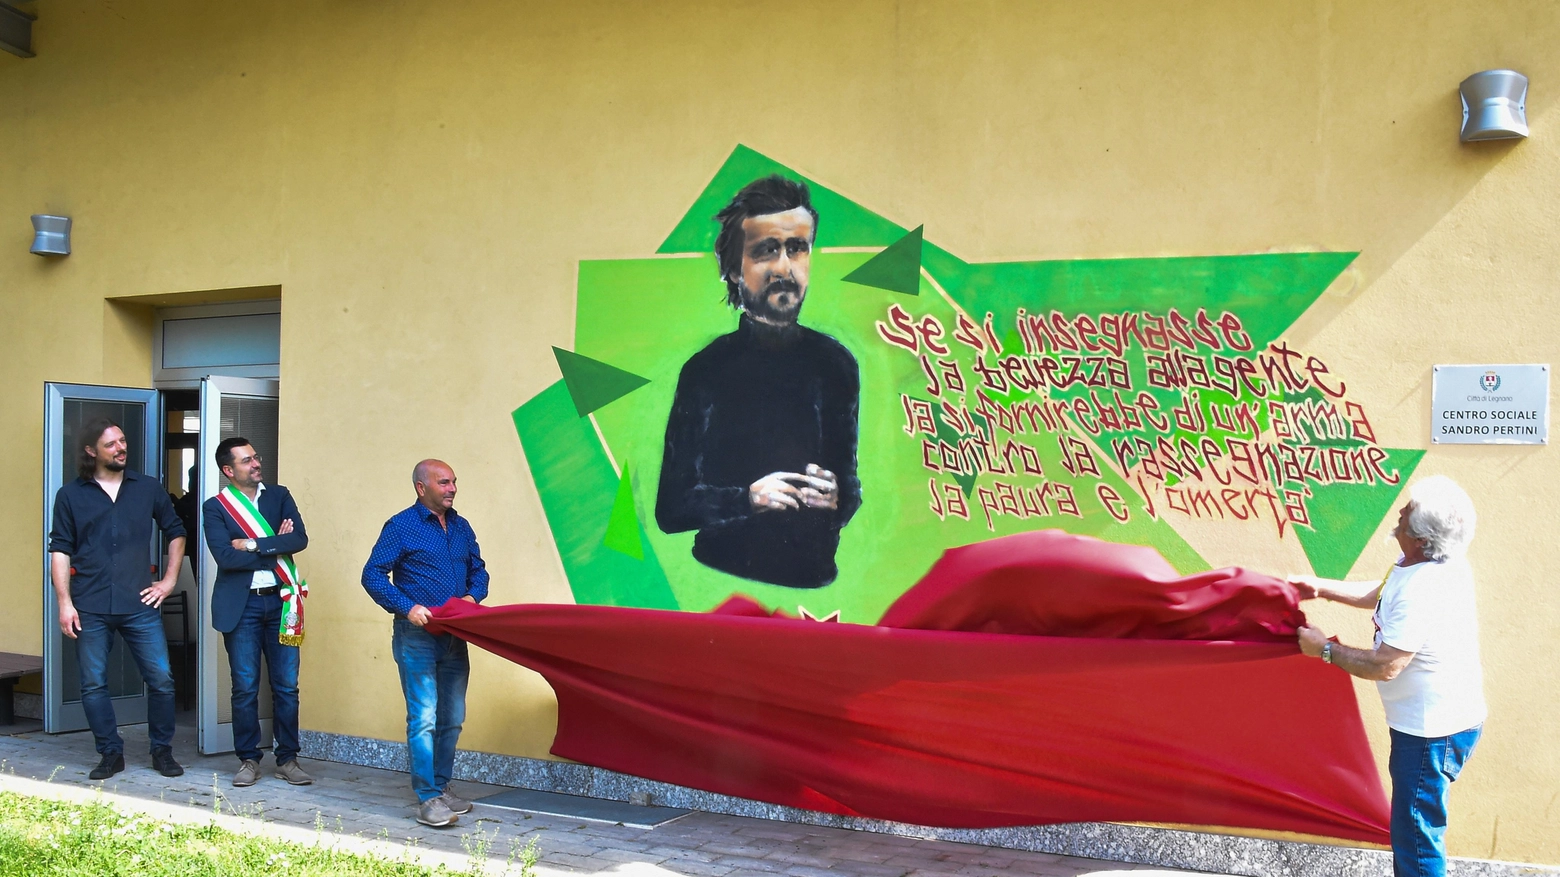 Doppia inaugurazione  Casa del volontariato  e un murale dedicato  a Peppino Impastato